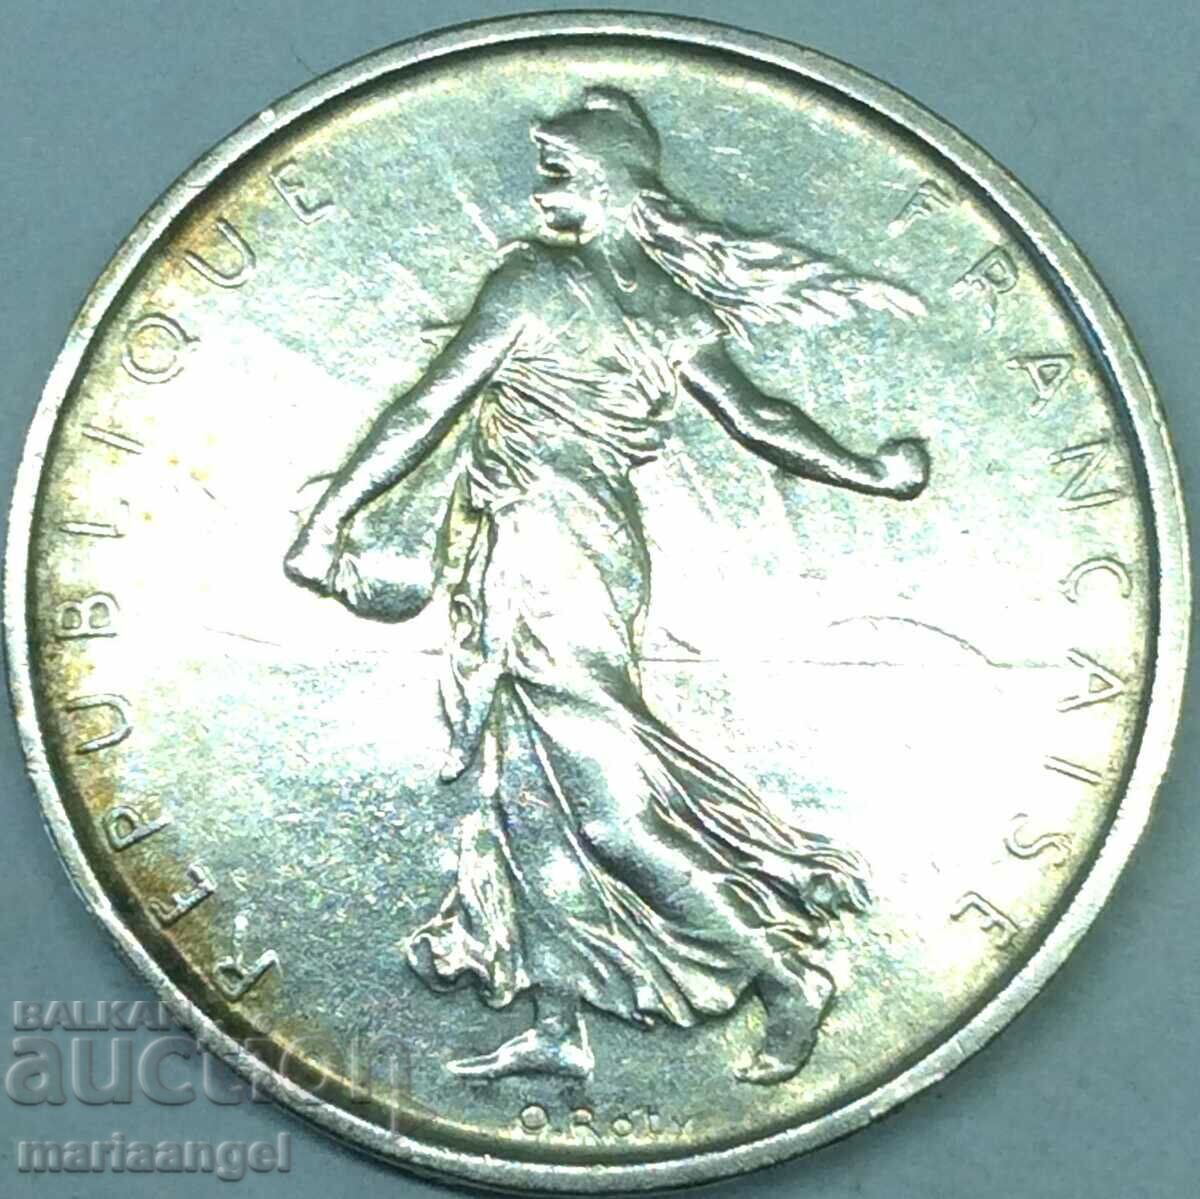 5 франка 1963 Франция сребро лека Патина